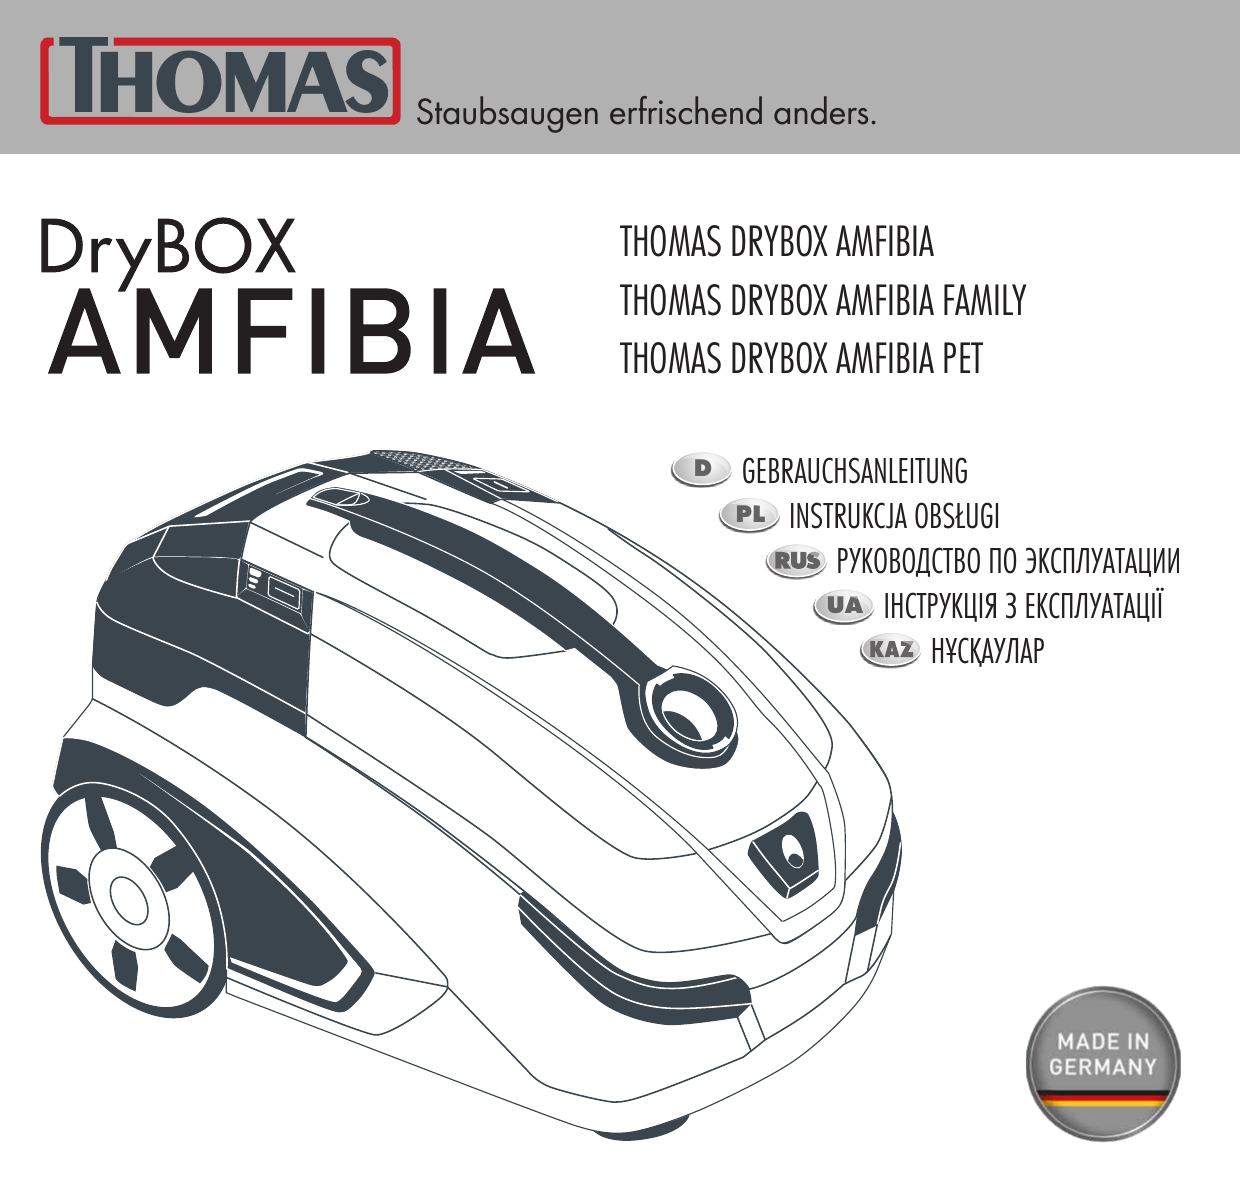 Thomas 788598 DRYBOX Amfibia Pet. Thomas 788599 DRYBOX Amfibia Family. Thomas DRYBOX Amfibia инструкция. Пылесос Thomas Amfibia инструкция. Моющий thomas 788598 drybox amfibia pet